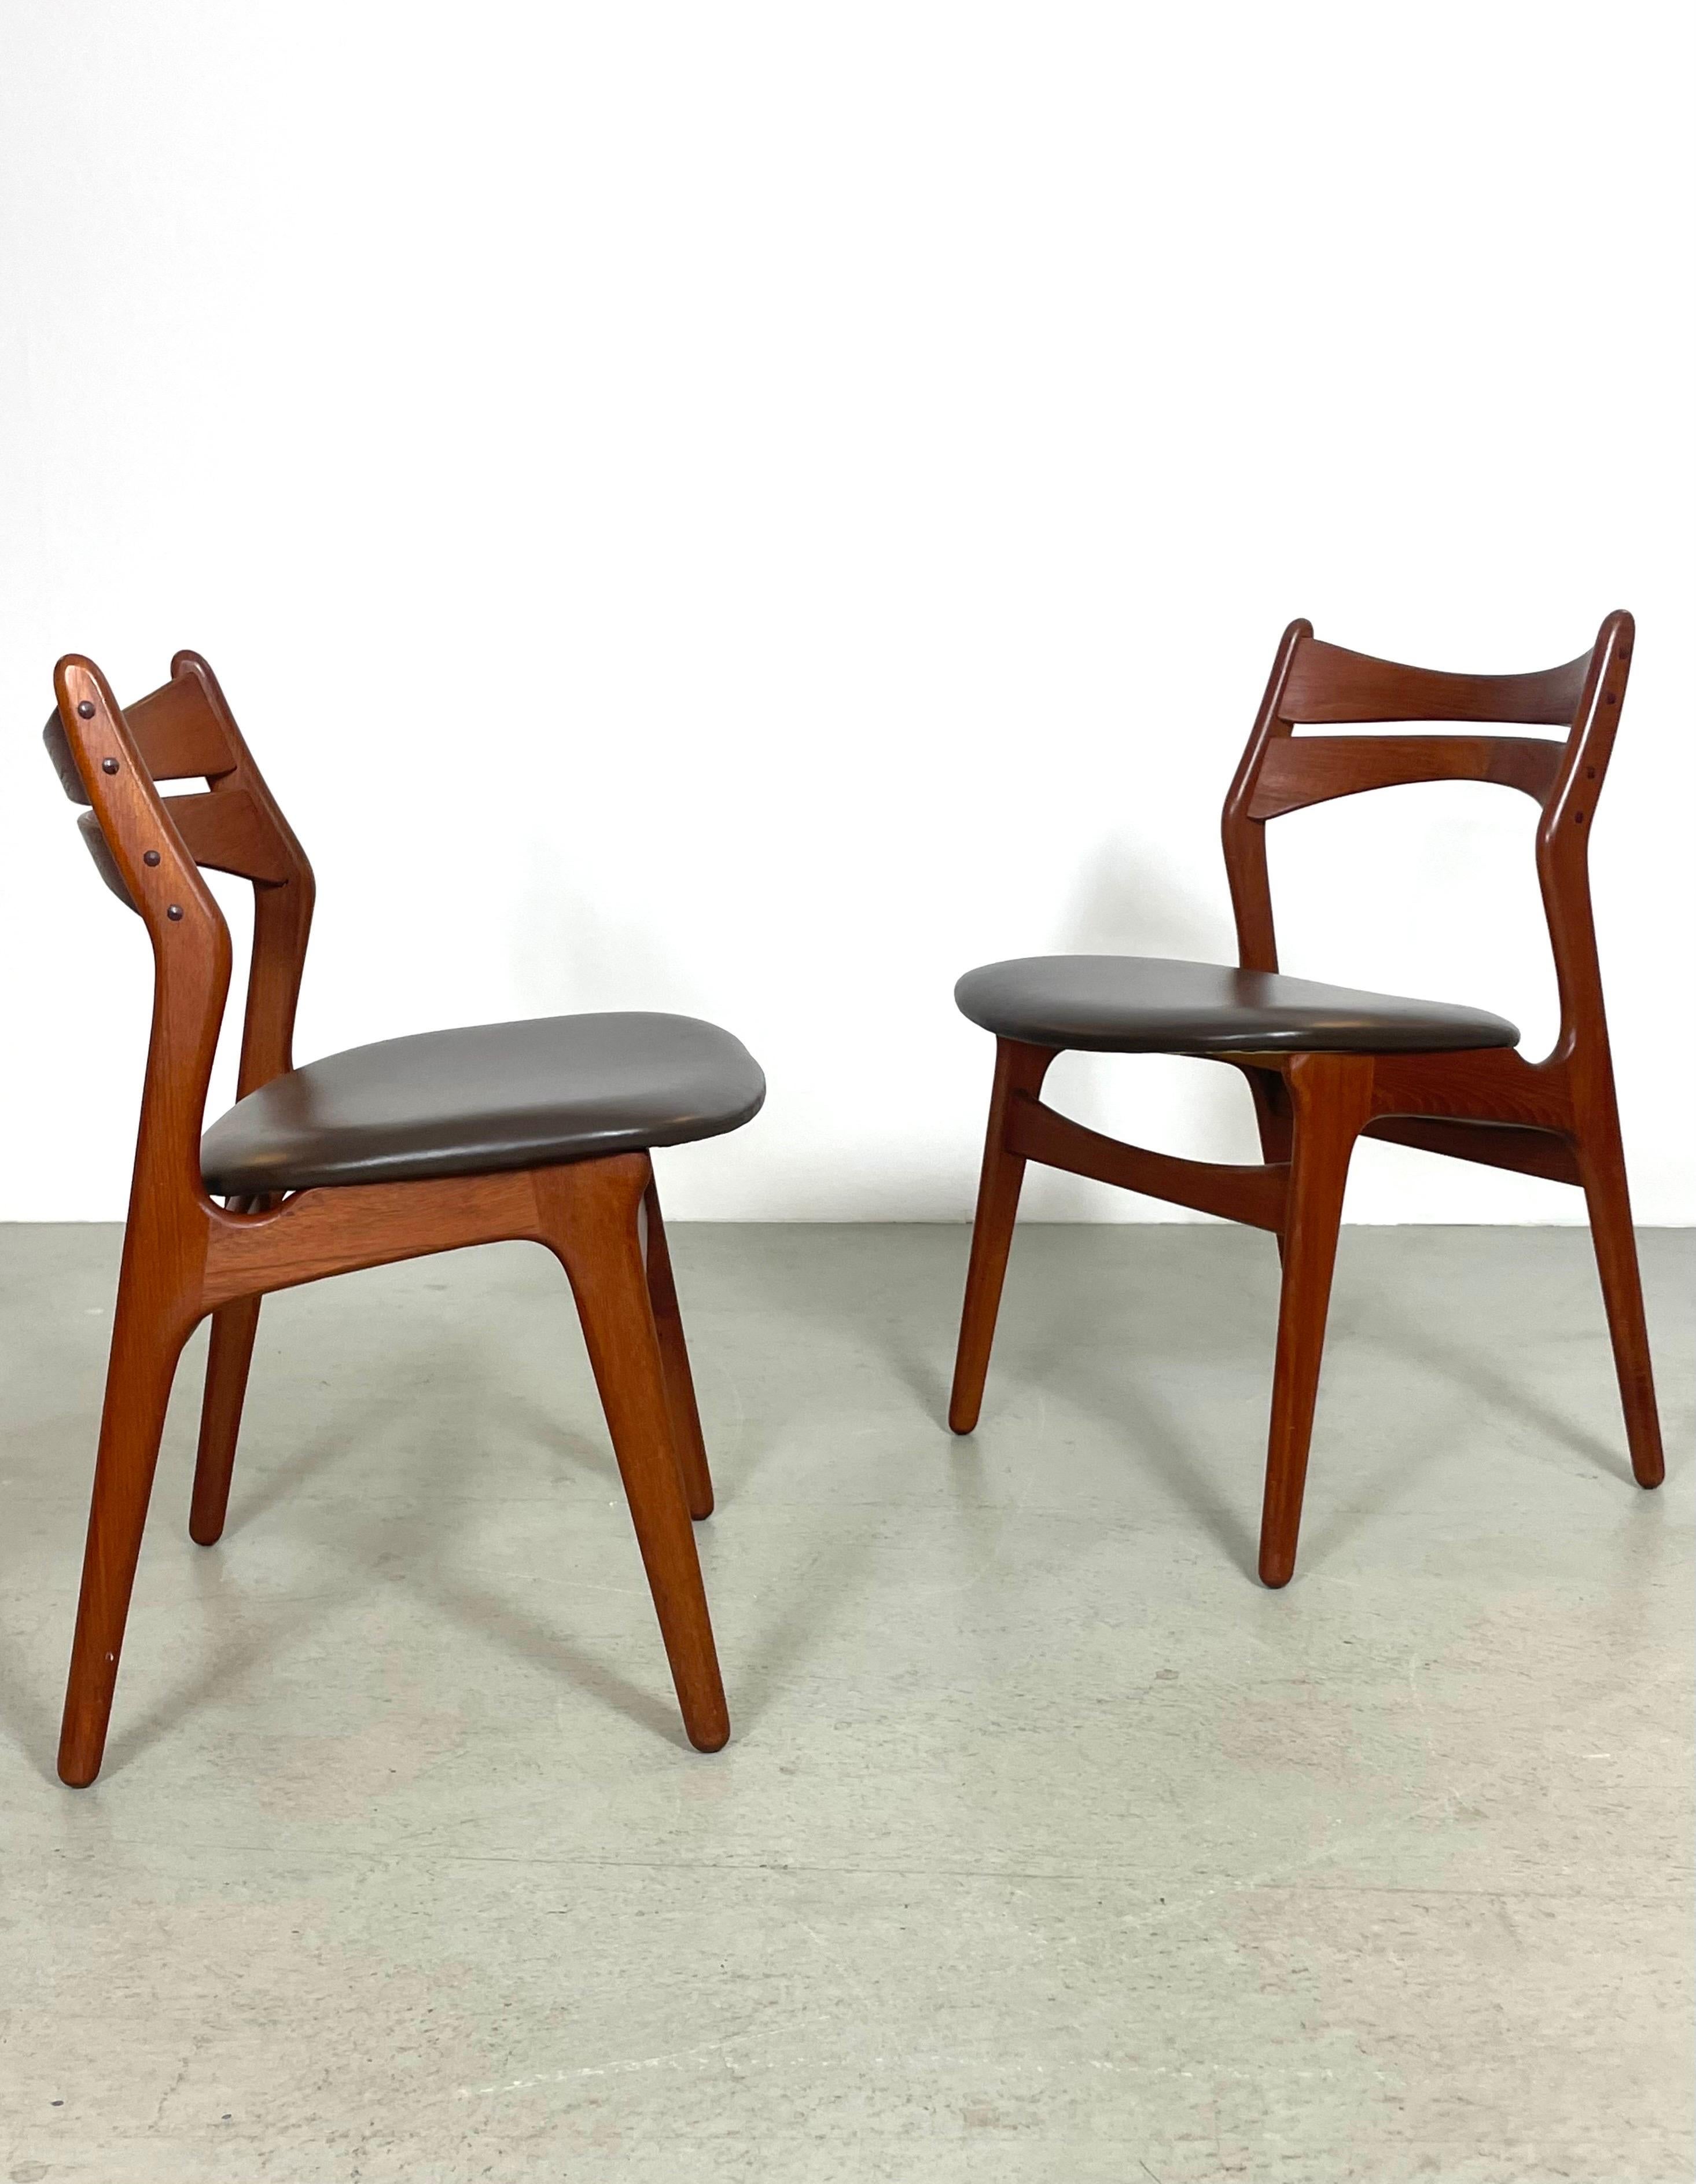 Scandinavian Modern Skandinavian Teak Dining Chairs by Erik Buch, Denmark 1950s For Sale